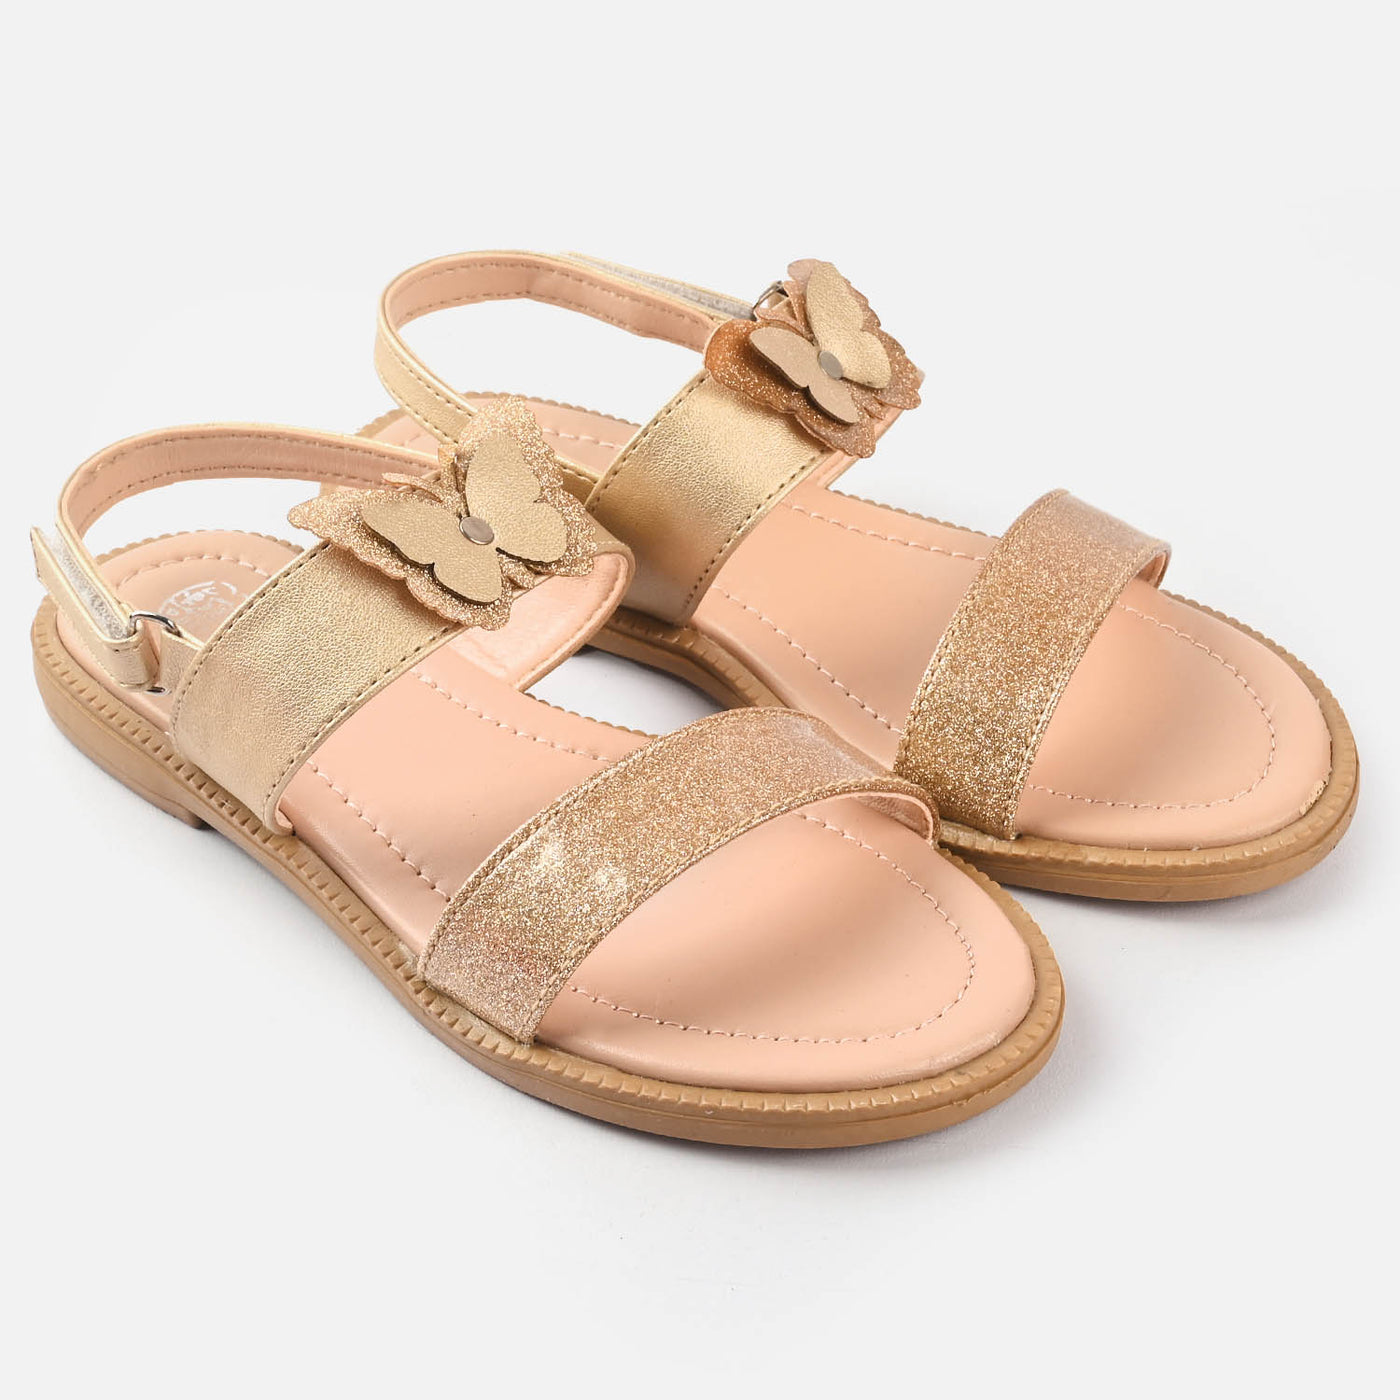 Girls Sandals 1284-Golden